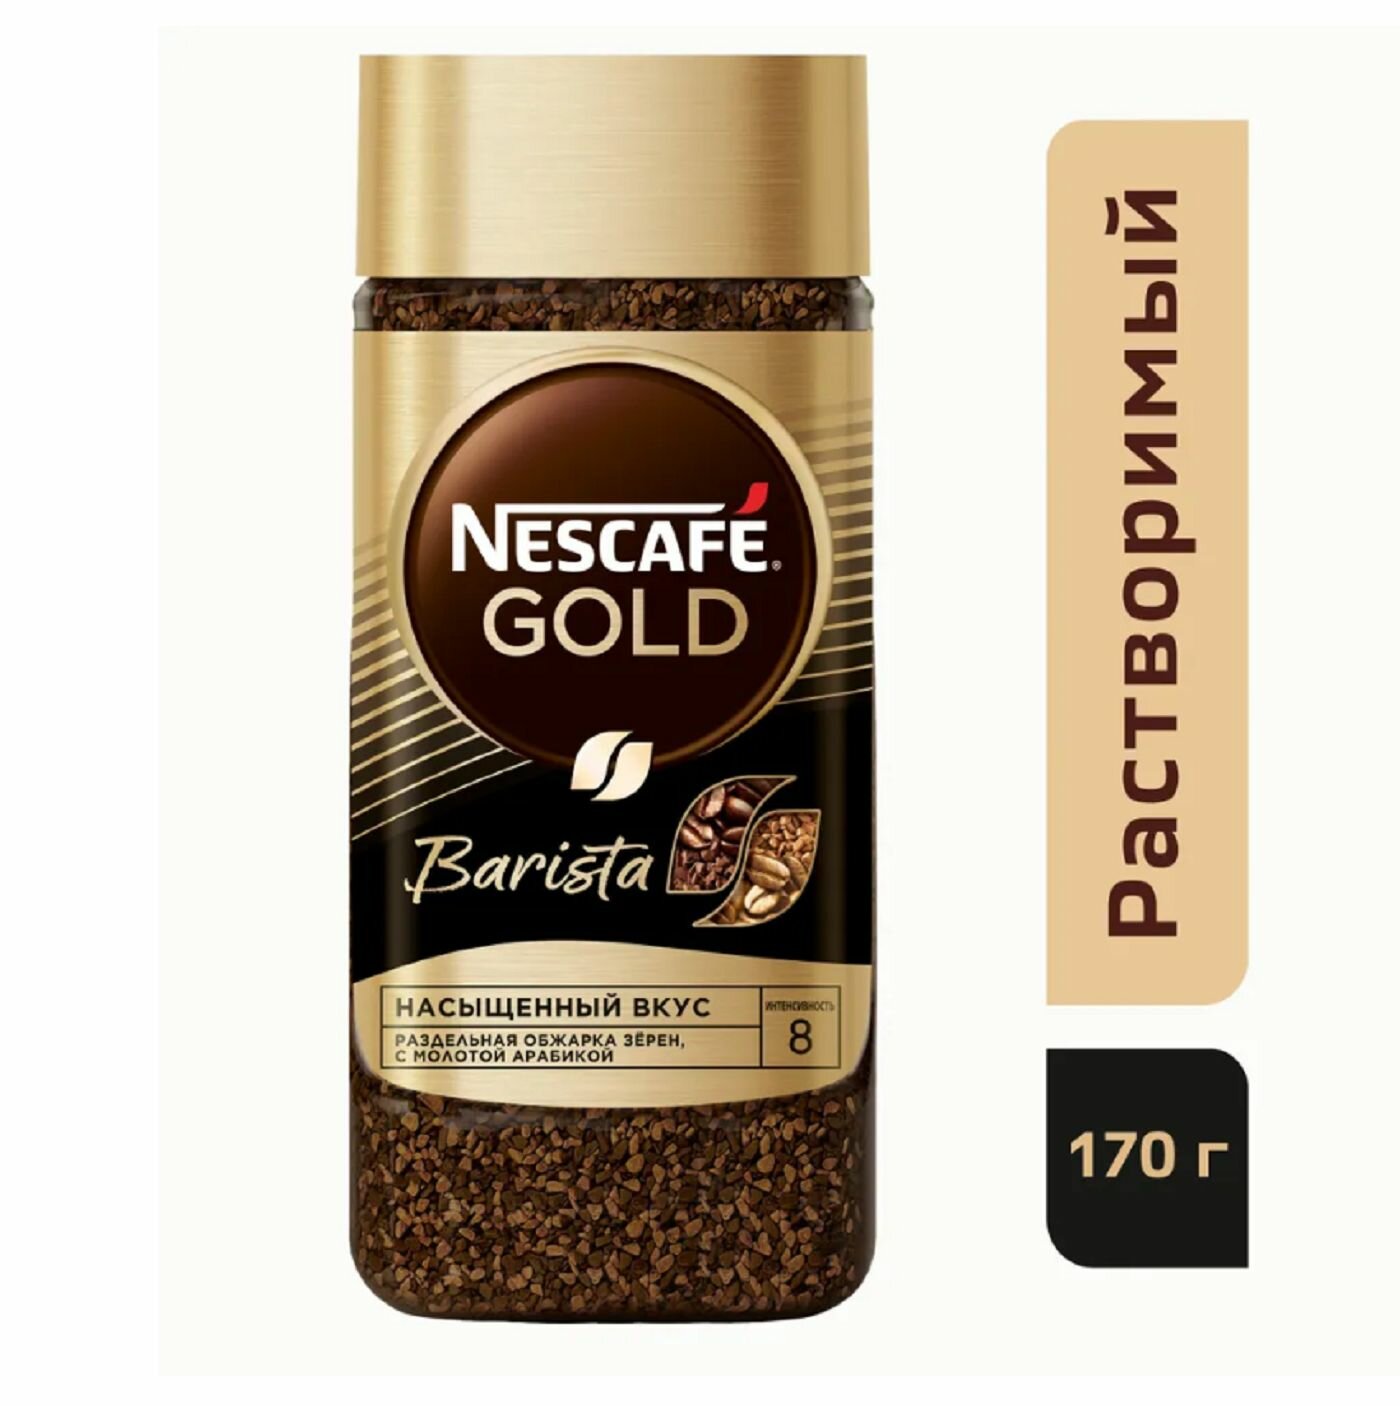 Кофе NESCAFE Gold Barista 170гр х 1шт, растворимый, сублимированный, с добавлением натурального жареного молотого кофе